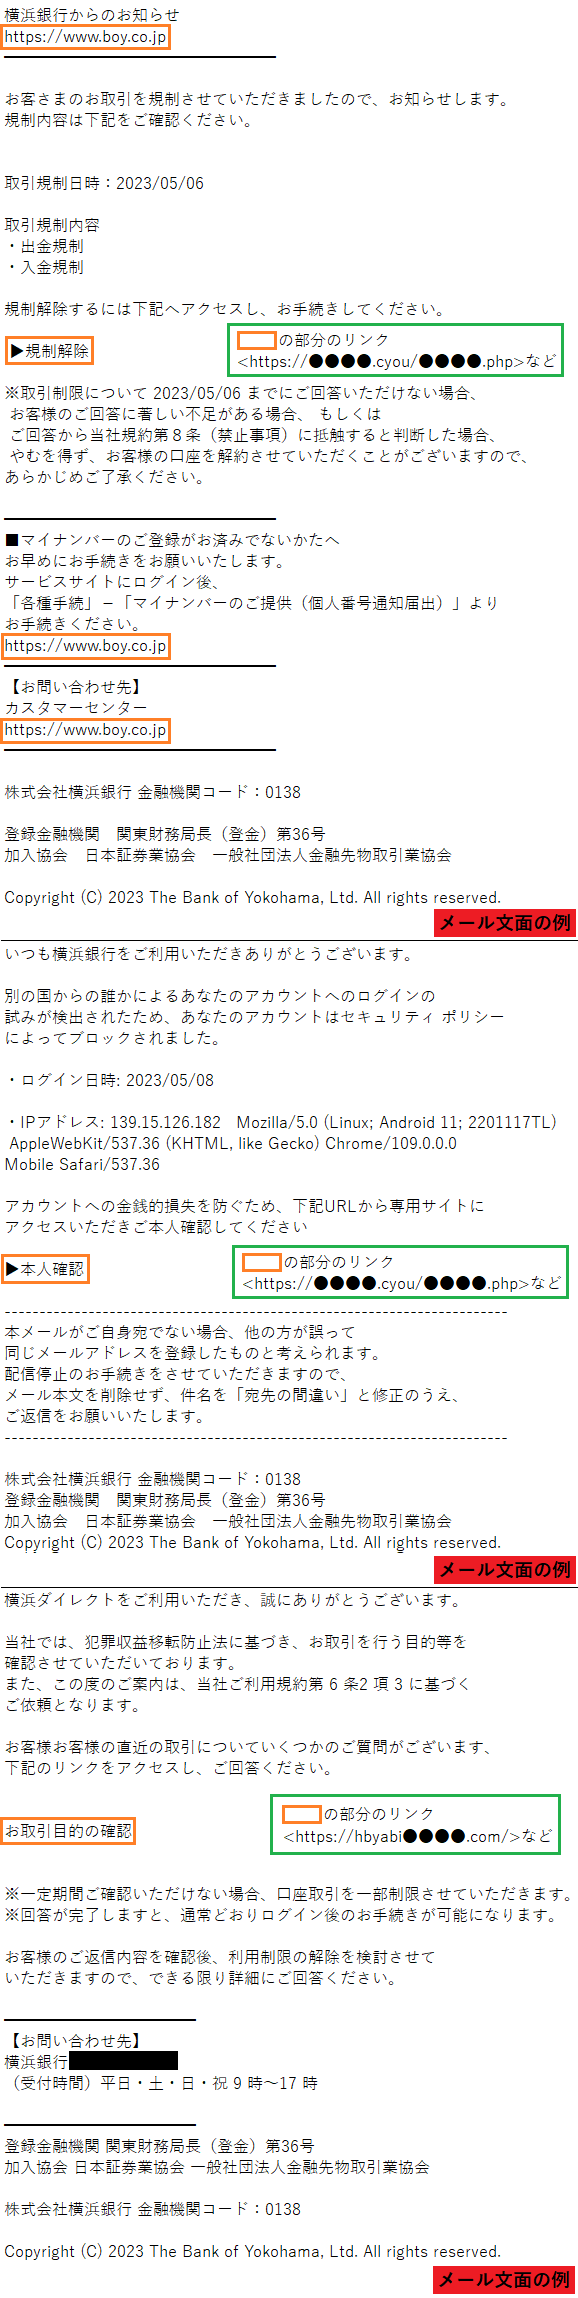 横浜銀行をかたるフィッシング (2023/05/08)